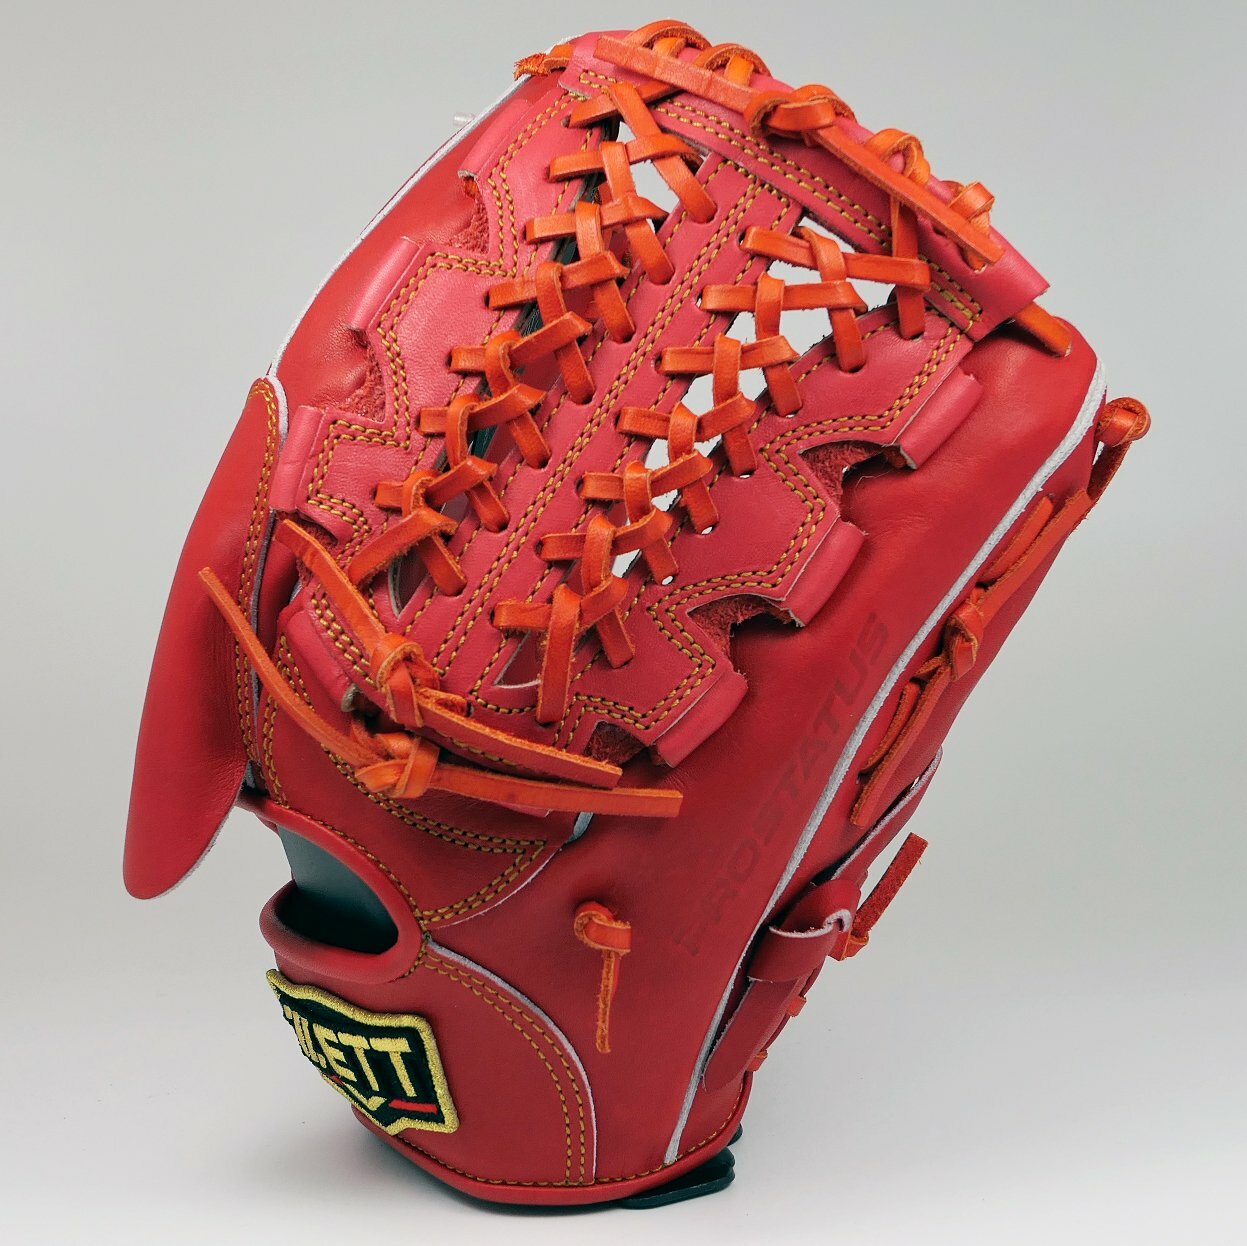 日本製 ZETT PROSTATUS 硬式最高階 投手手套 棒球手套 壘球手套